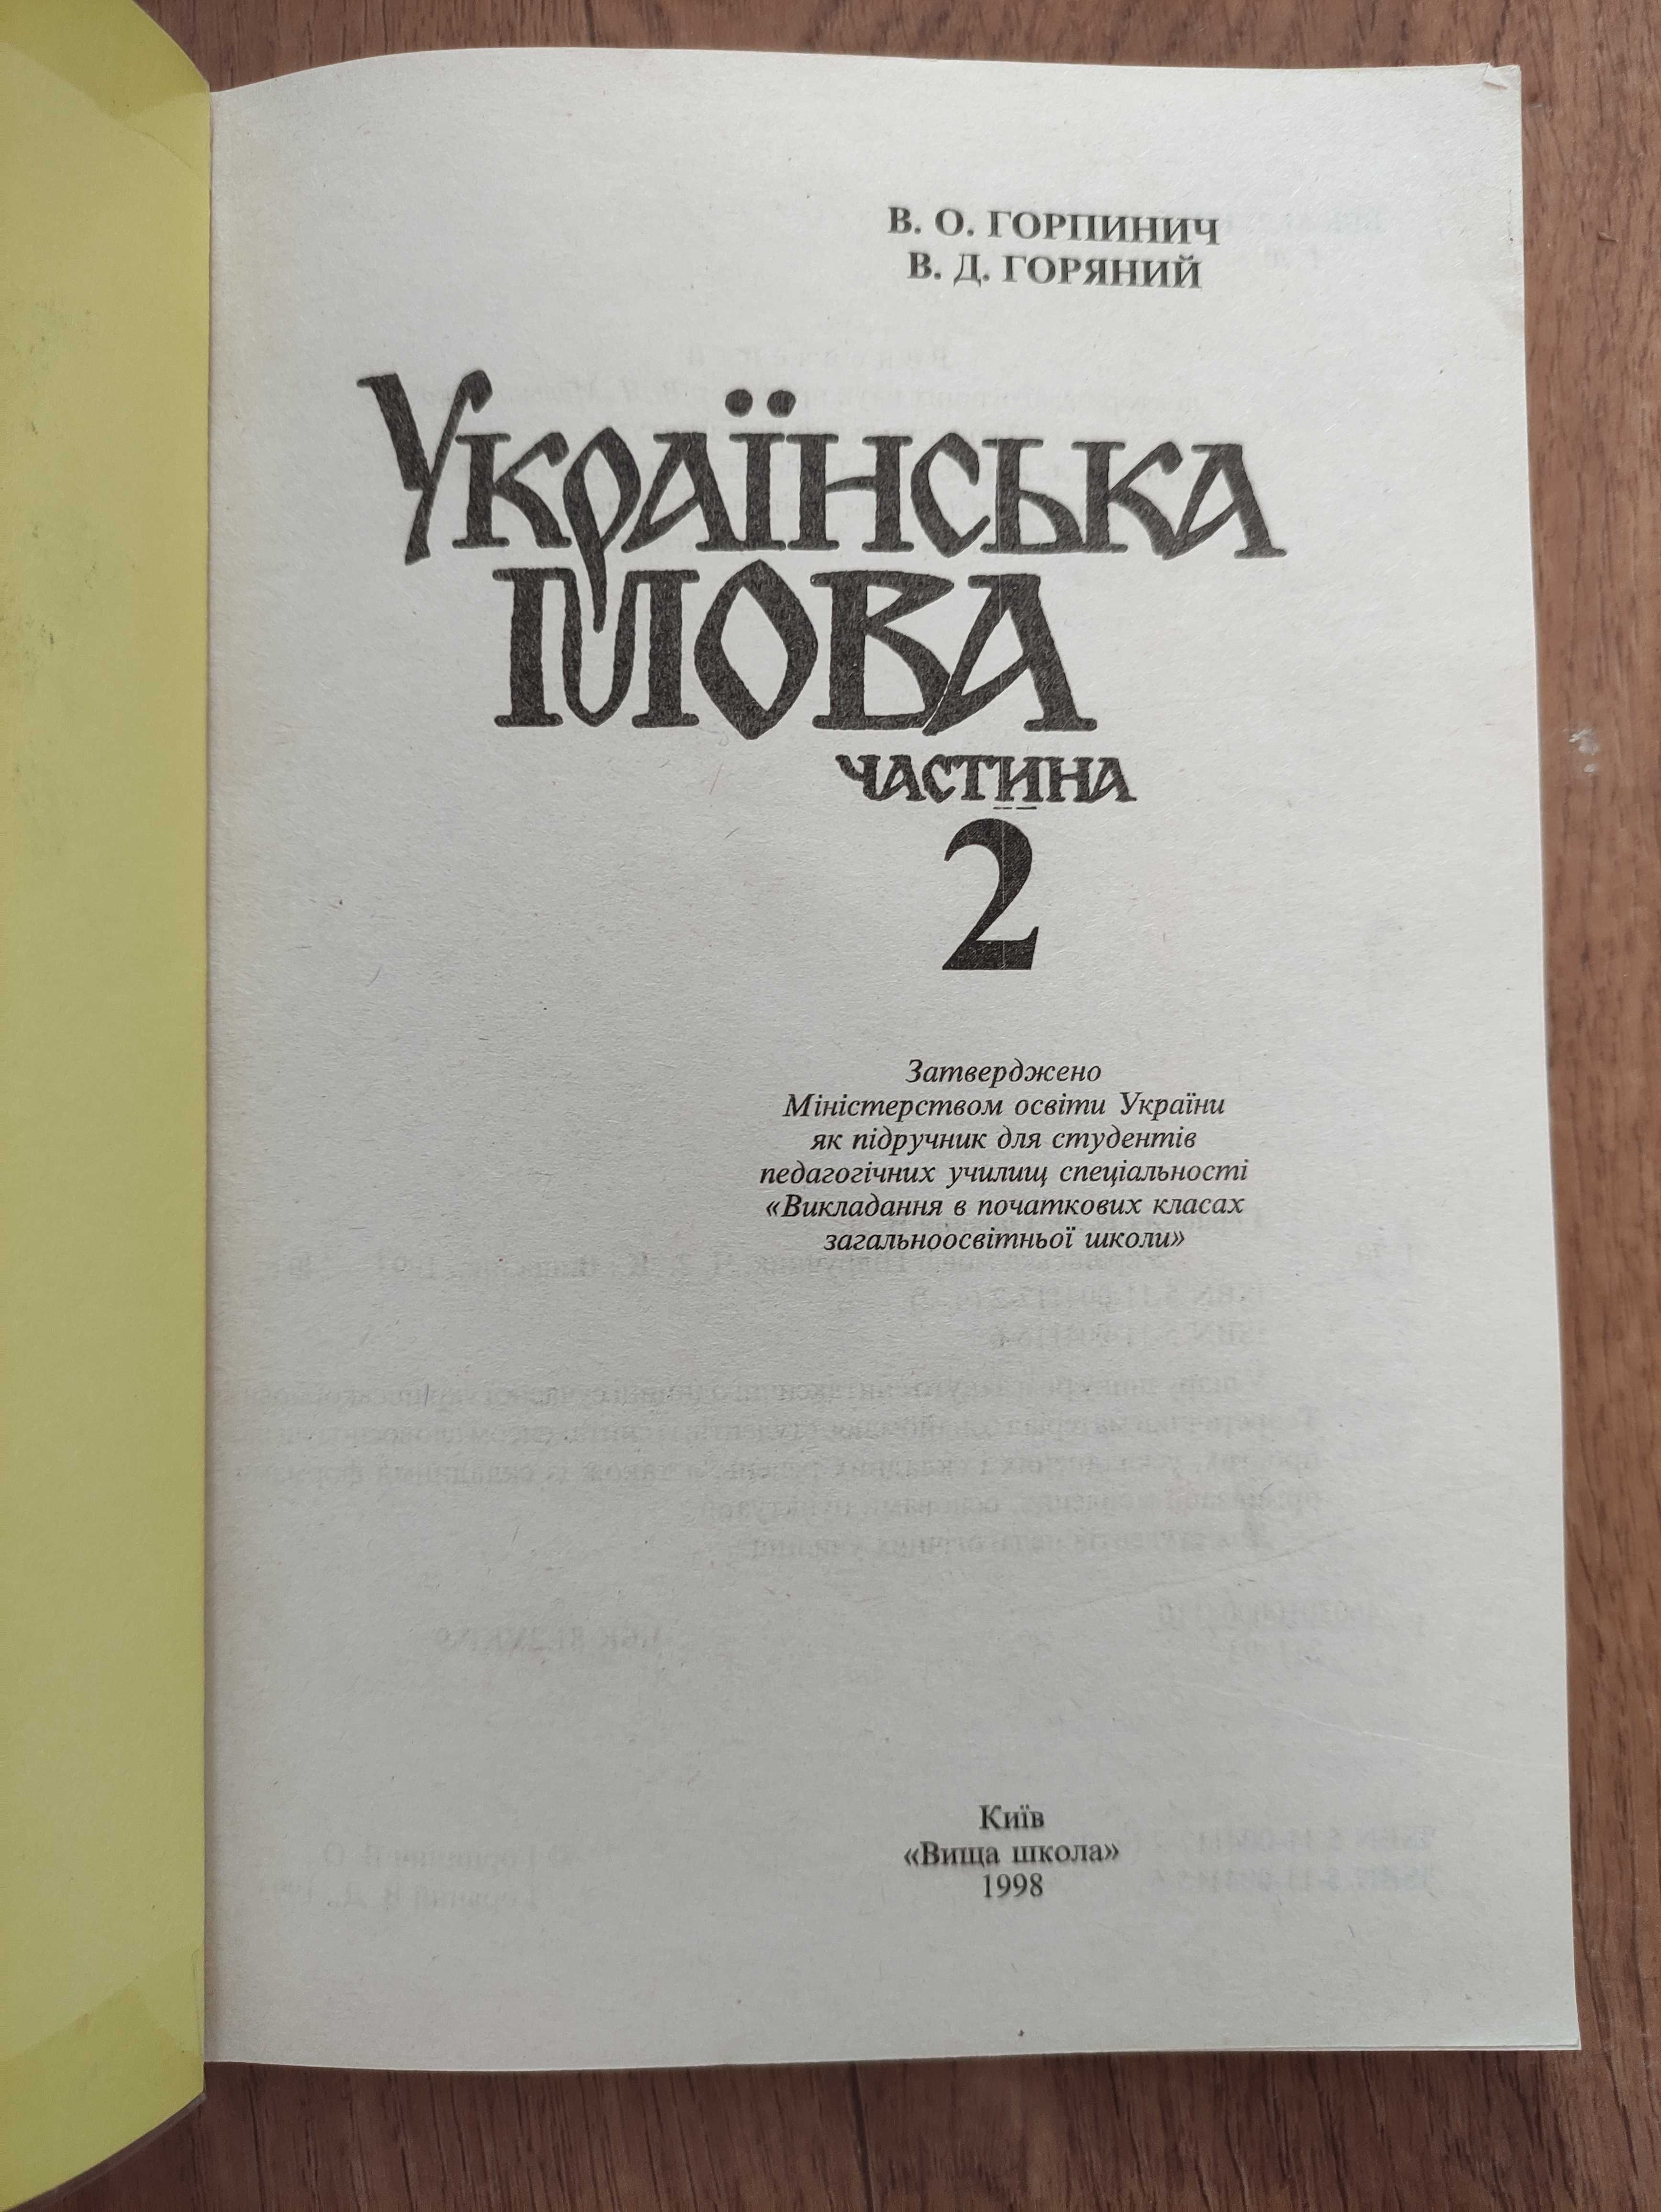 Підручник Українська мова 2 частини